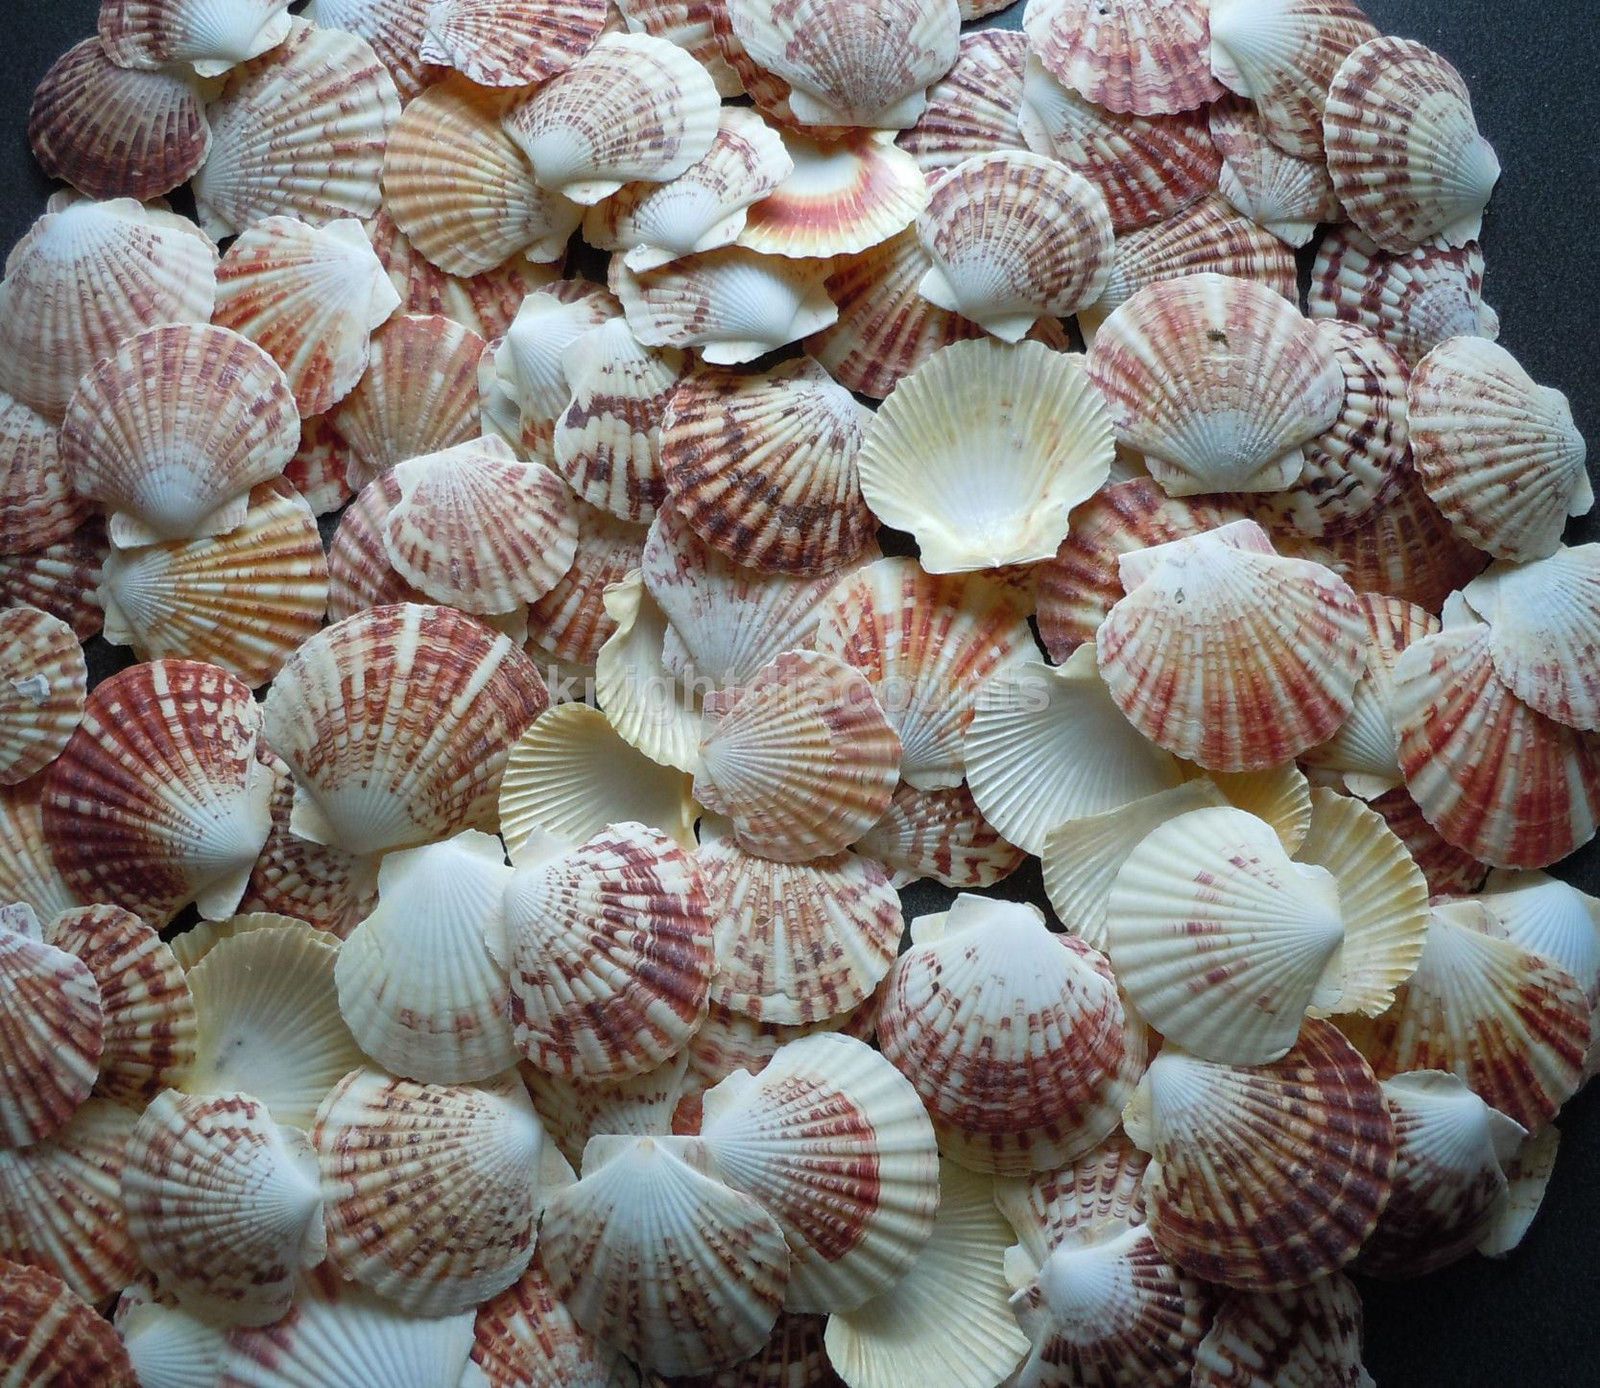 Морской гребешок фото живой в природе википедия